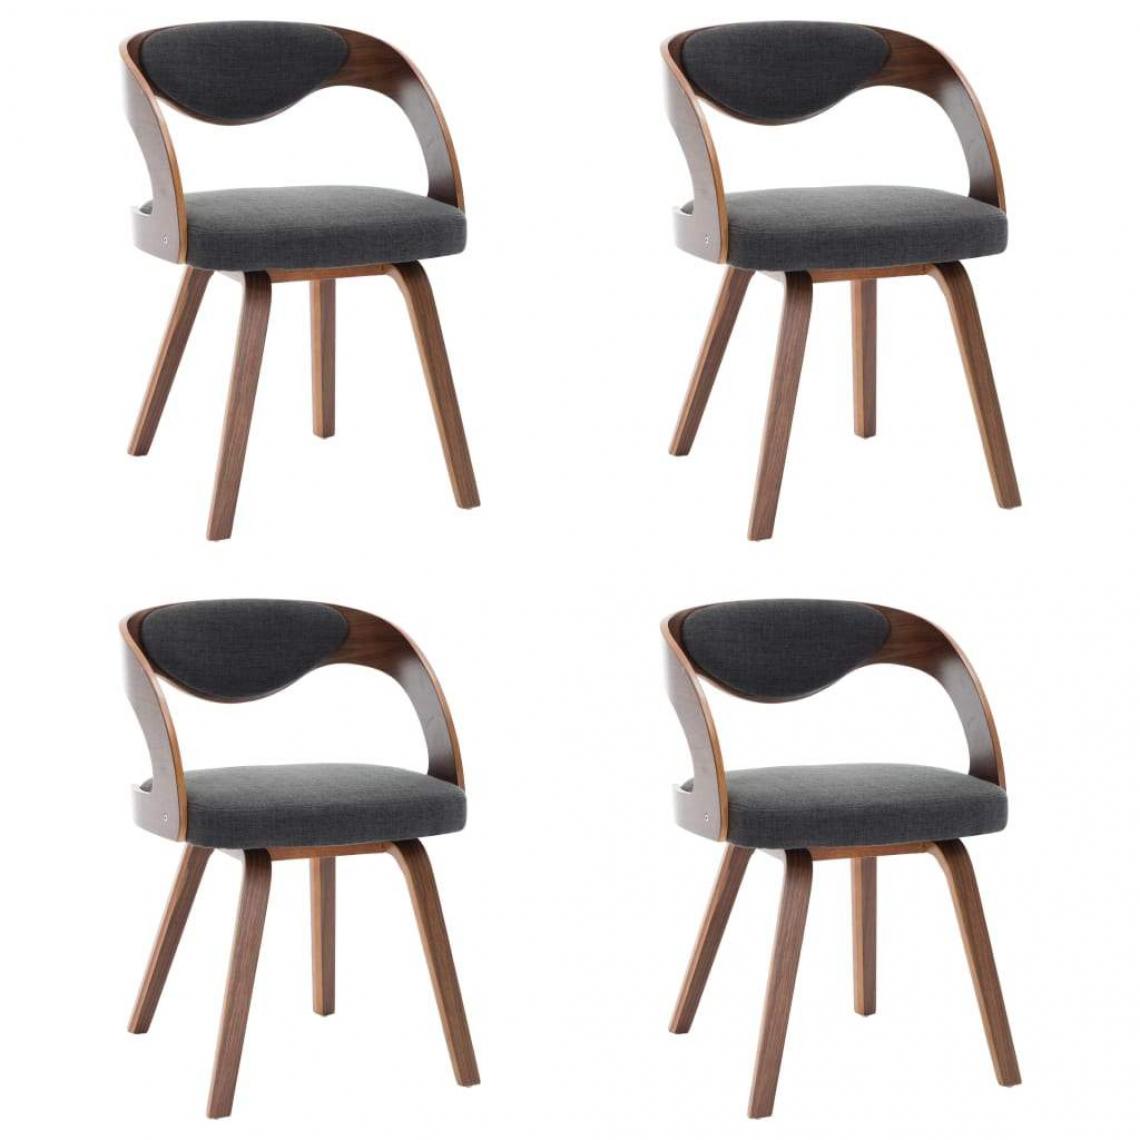 Decoshop26 - Lot de 4 chaises de salle à manger cuisine design moderne bois courbé et tissu gris foncé CDS021539 - Chaises